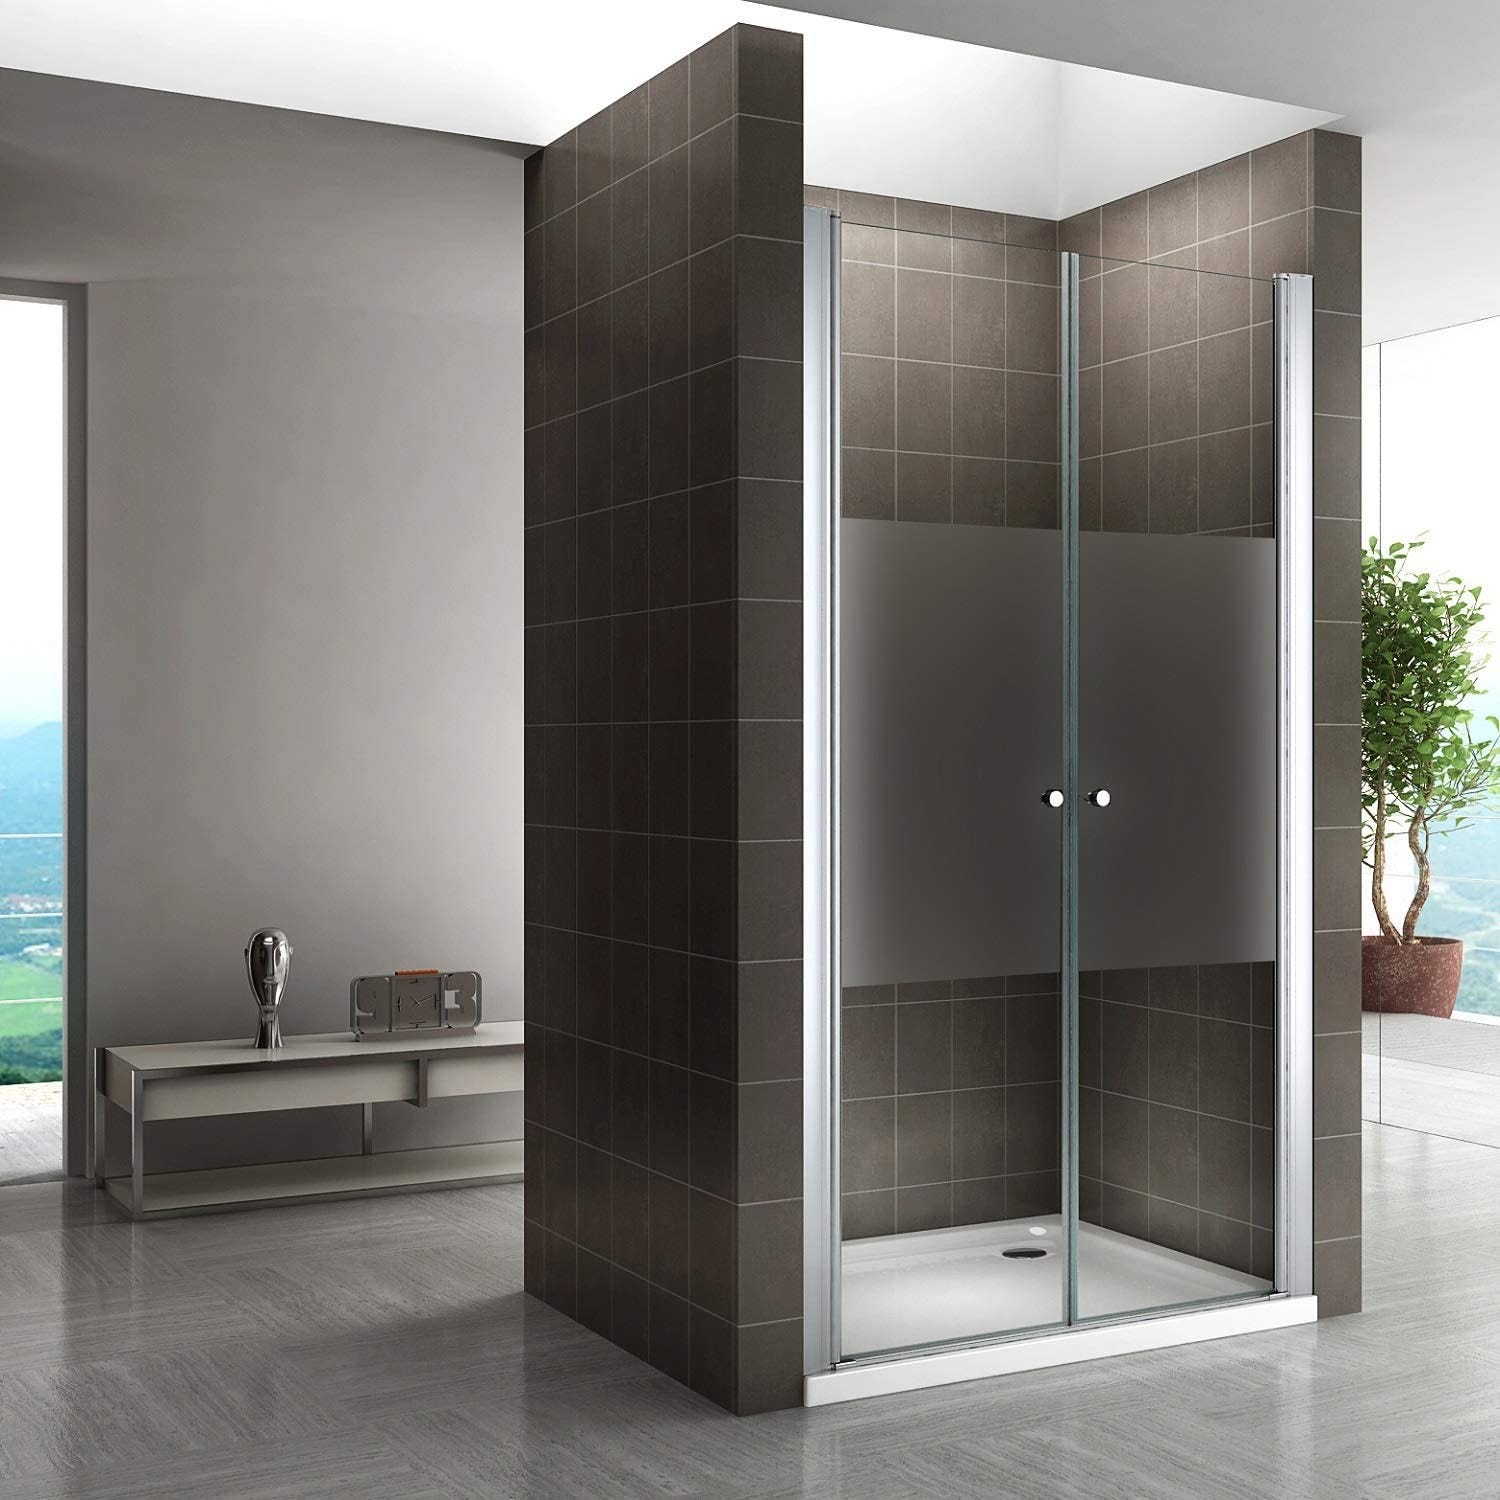 GINA Porte de douche H 185 cm Largeur Réglable 92 à 96 cm verre semi-opaque 5